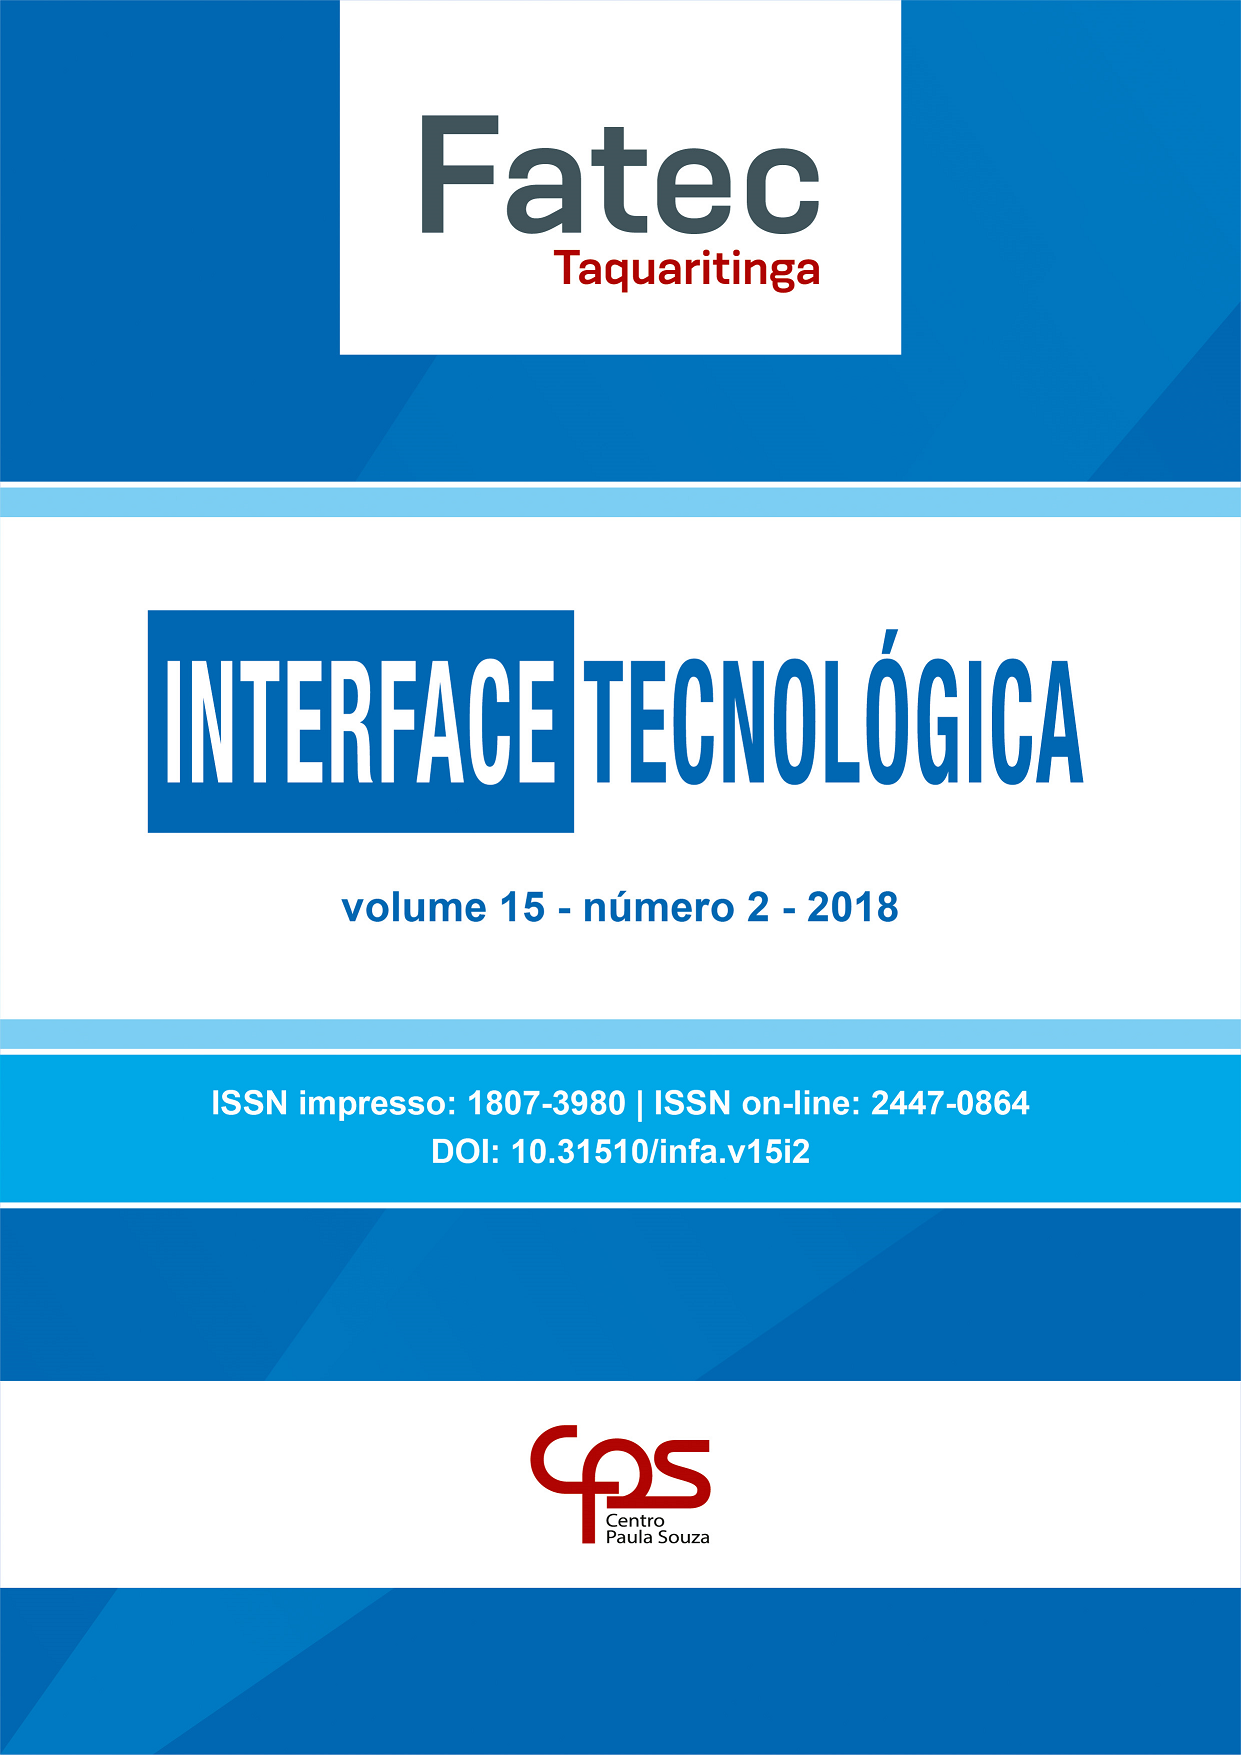 					Visualizar v. 15 n. 2 (2018): Revista Interface Tecnológica
				